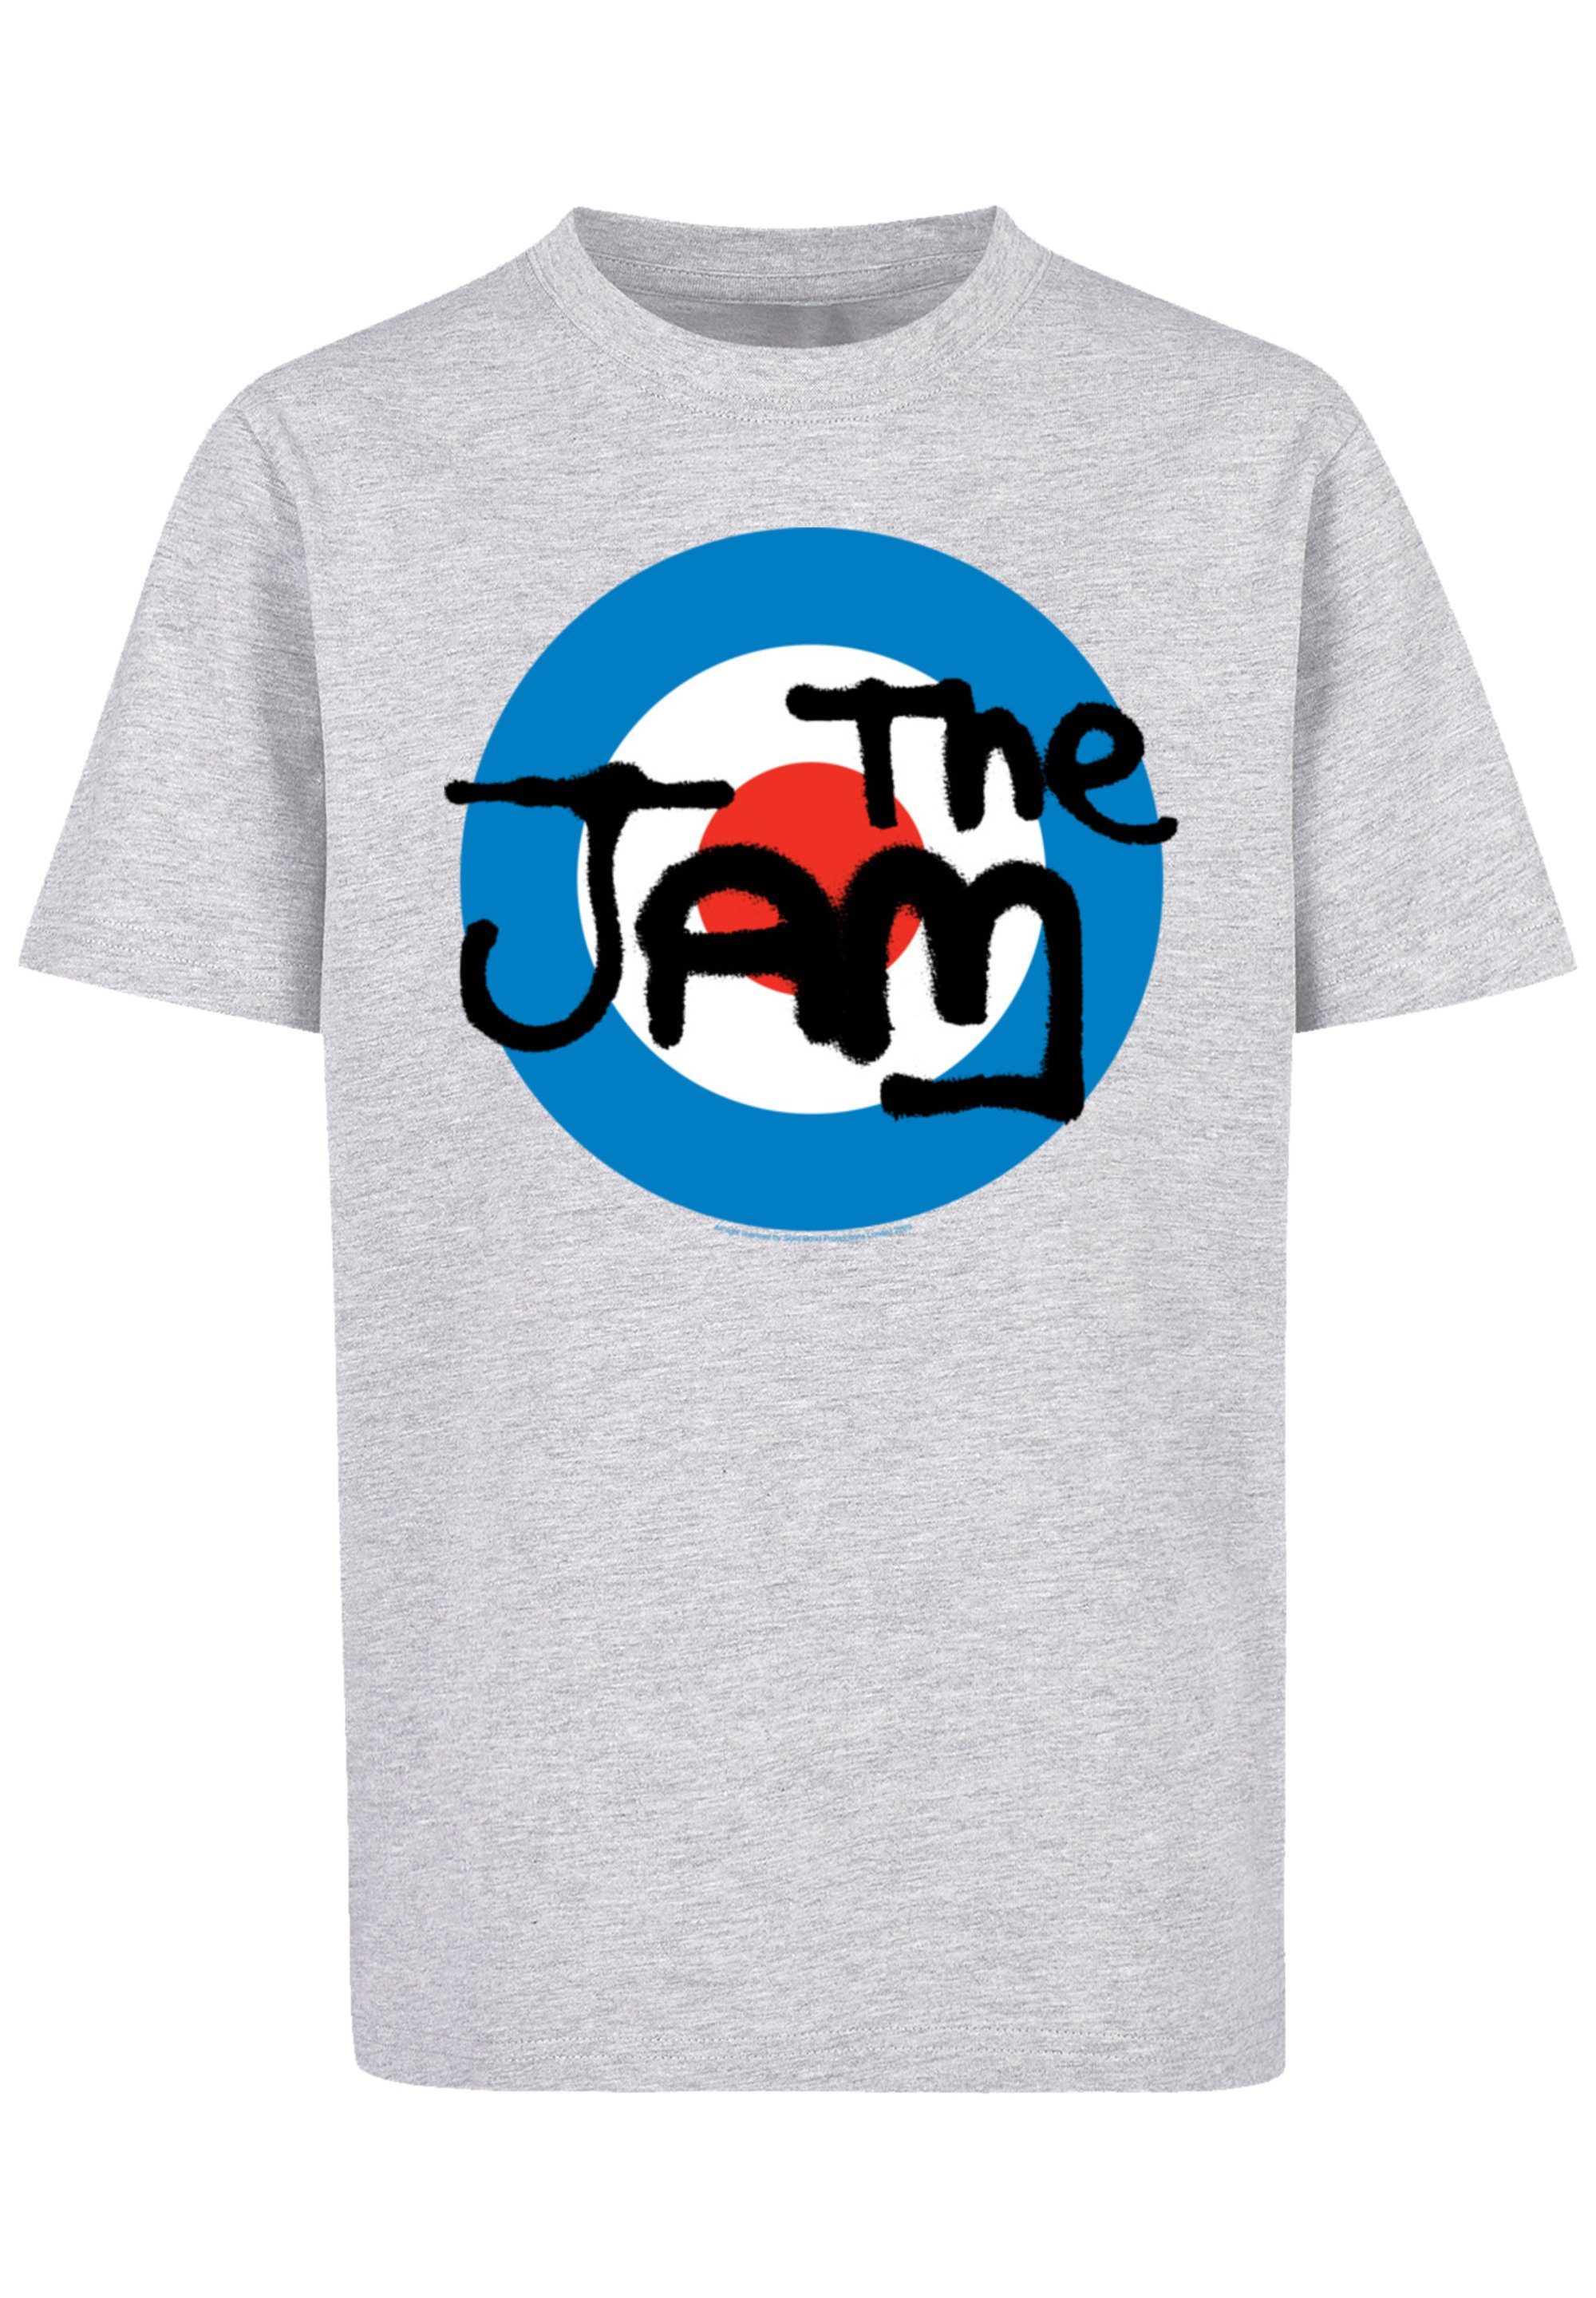 hohem Classic Premium Baumwollstoff F4NT4STIC Logo Band T-Shirt Sehr weicher mit Jam Qualität, The Tragekomfort